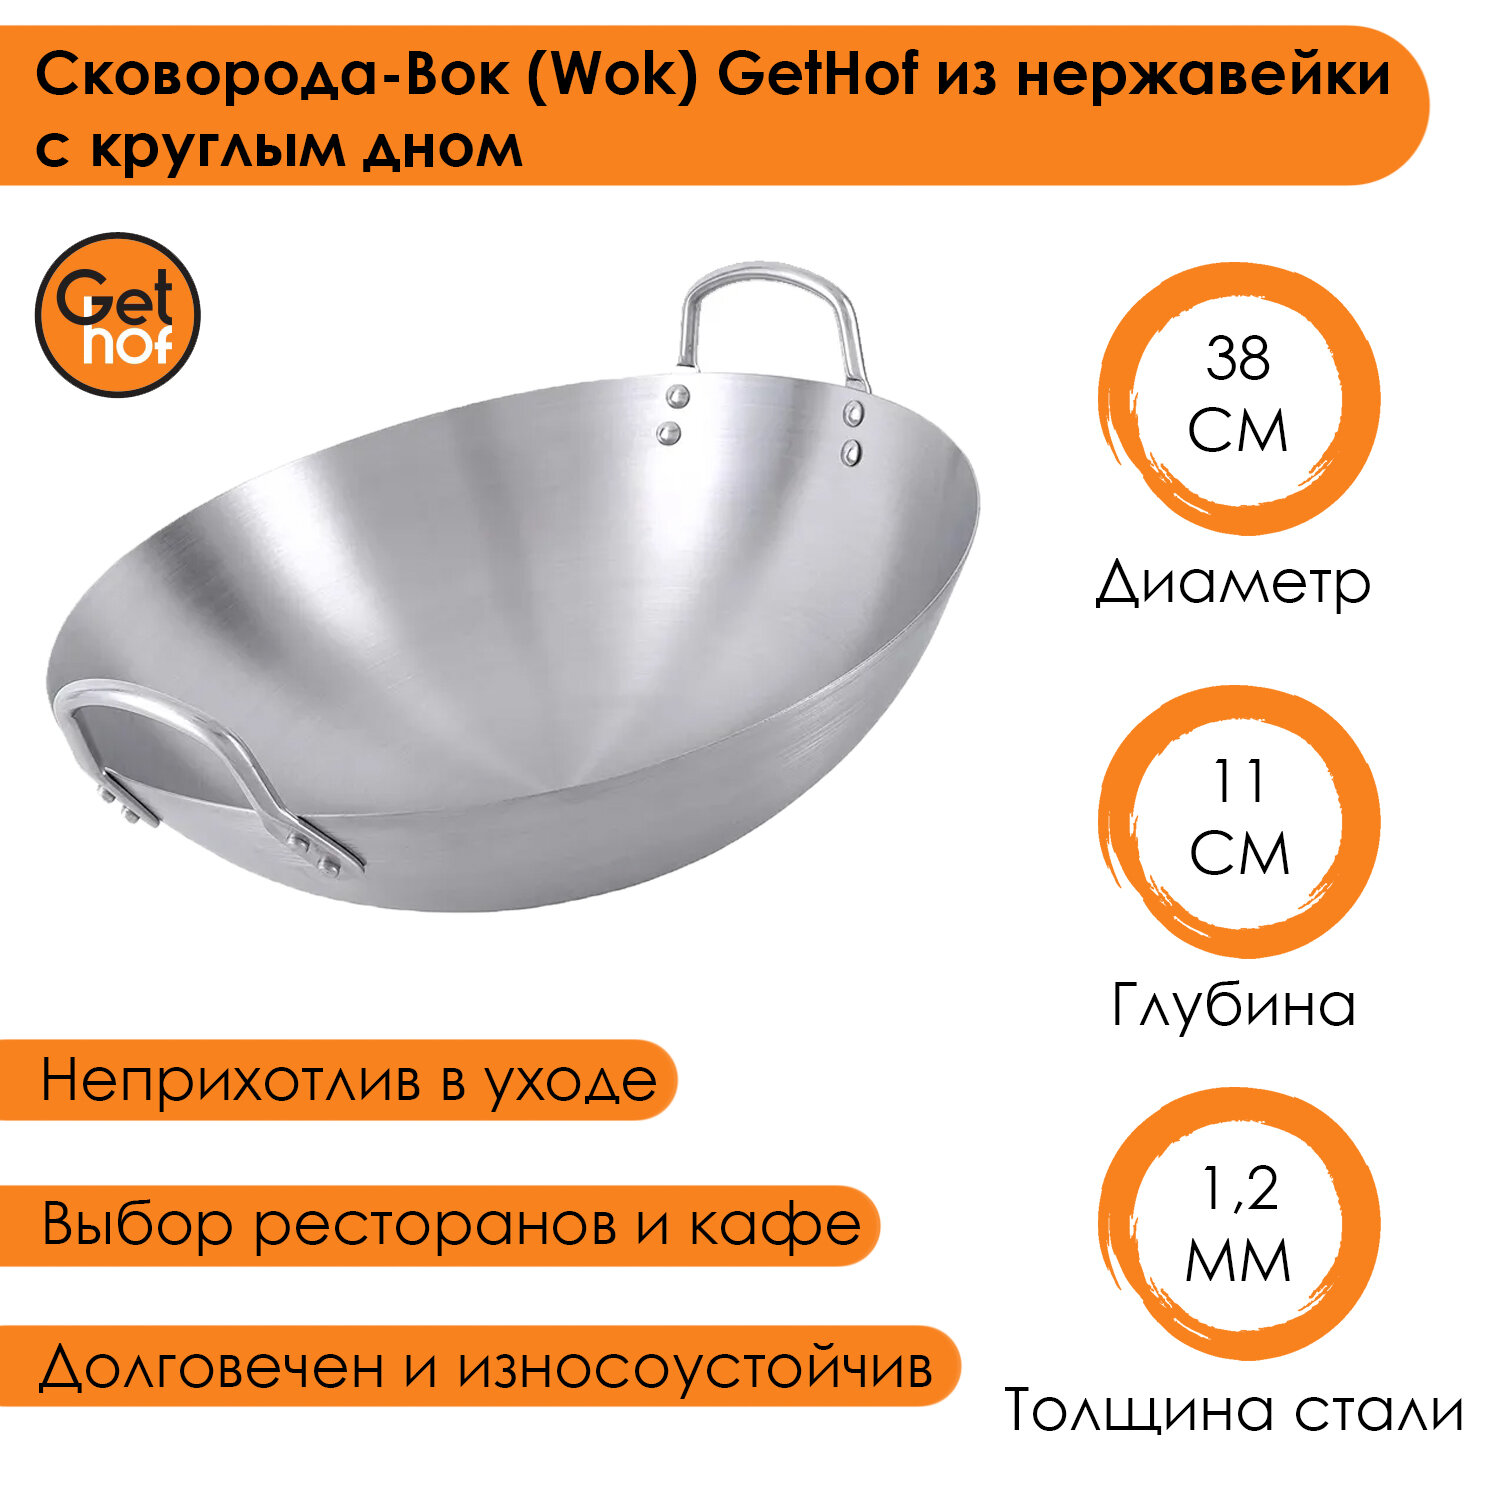 Сковорода-вок (Wok) GetHof из нержавеющей стали S201 двуручный 38 см